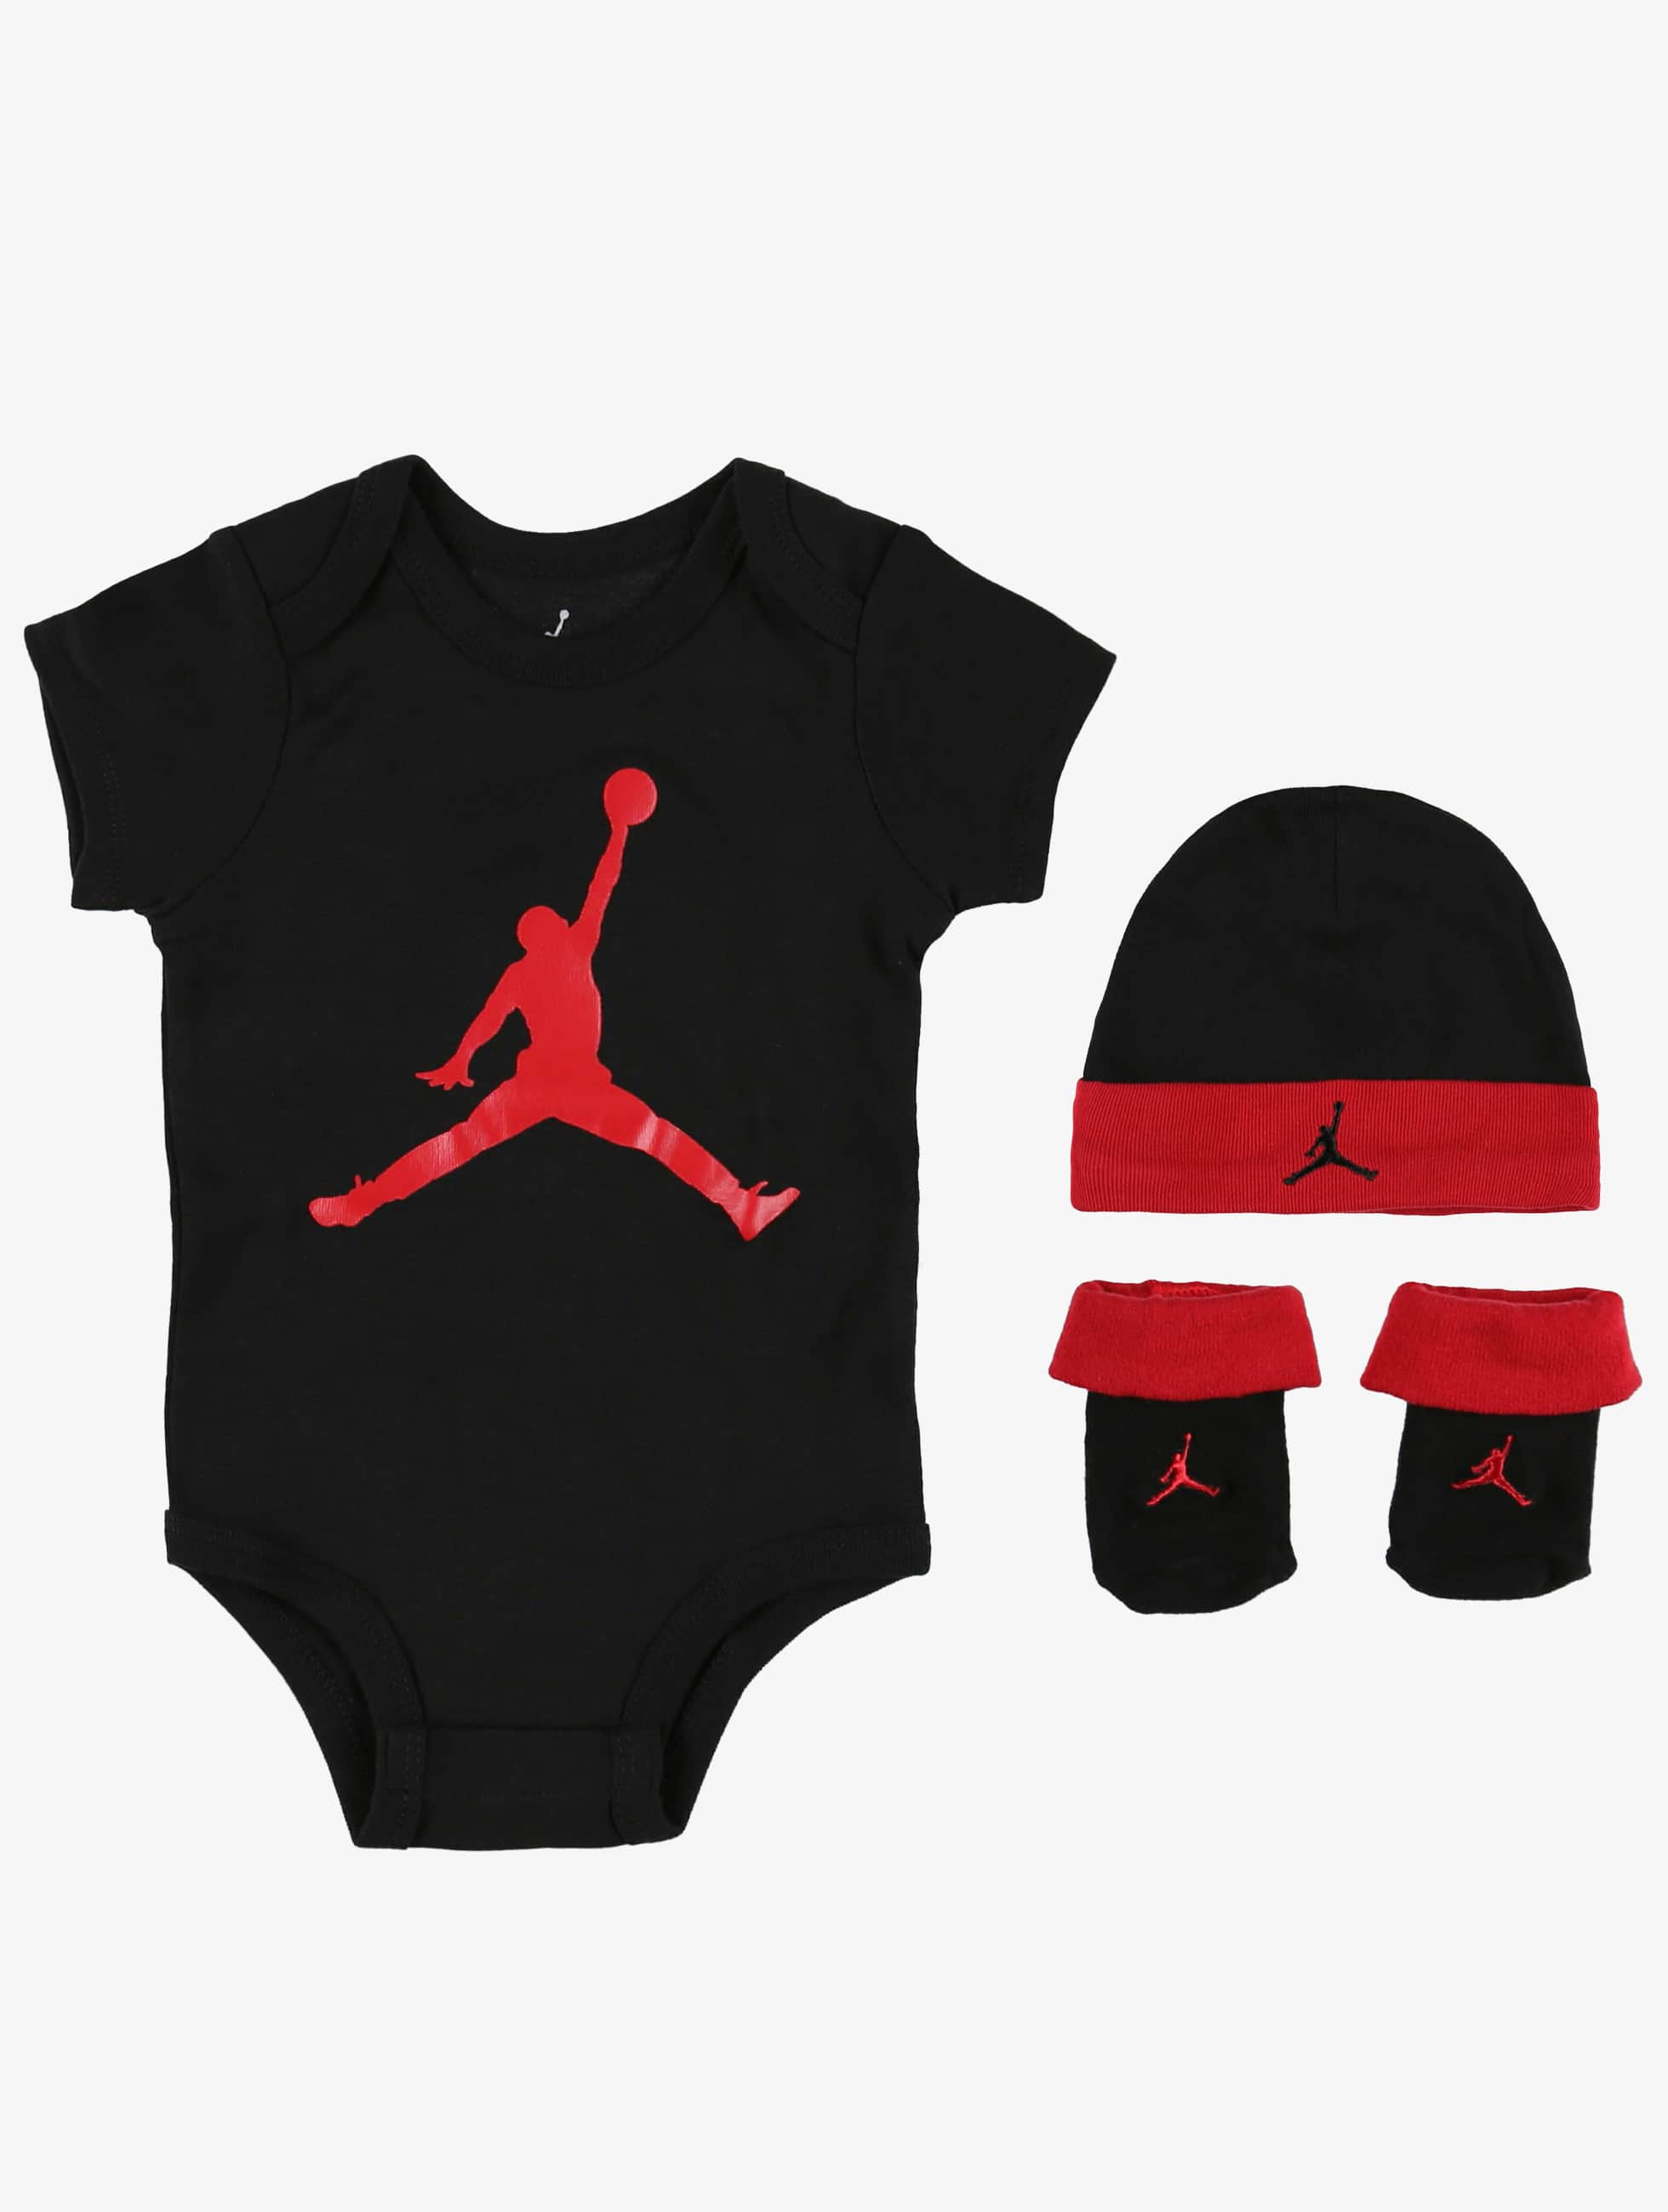 Jordan | Jumpman noir Enfant Body 734712